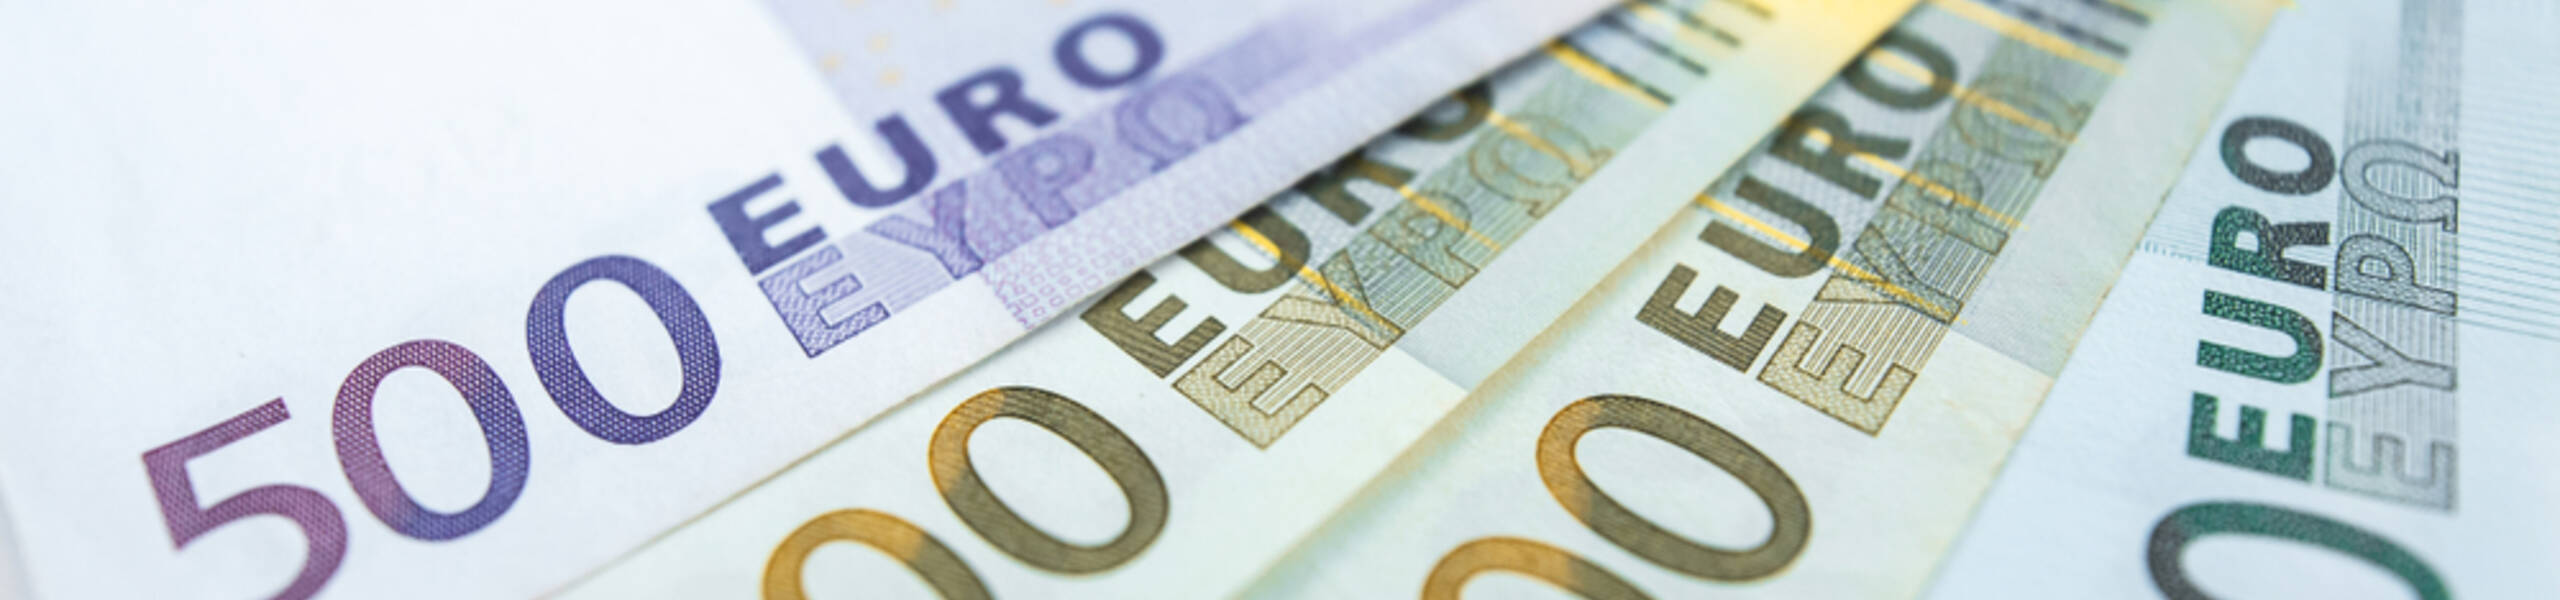 ING는 EUR/USD가 1.20을 돌파할 것이라고 예측합니다. 어떻게 생각하나요?